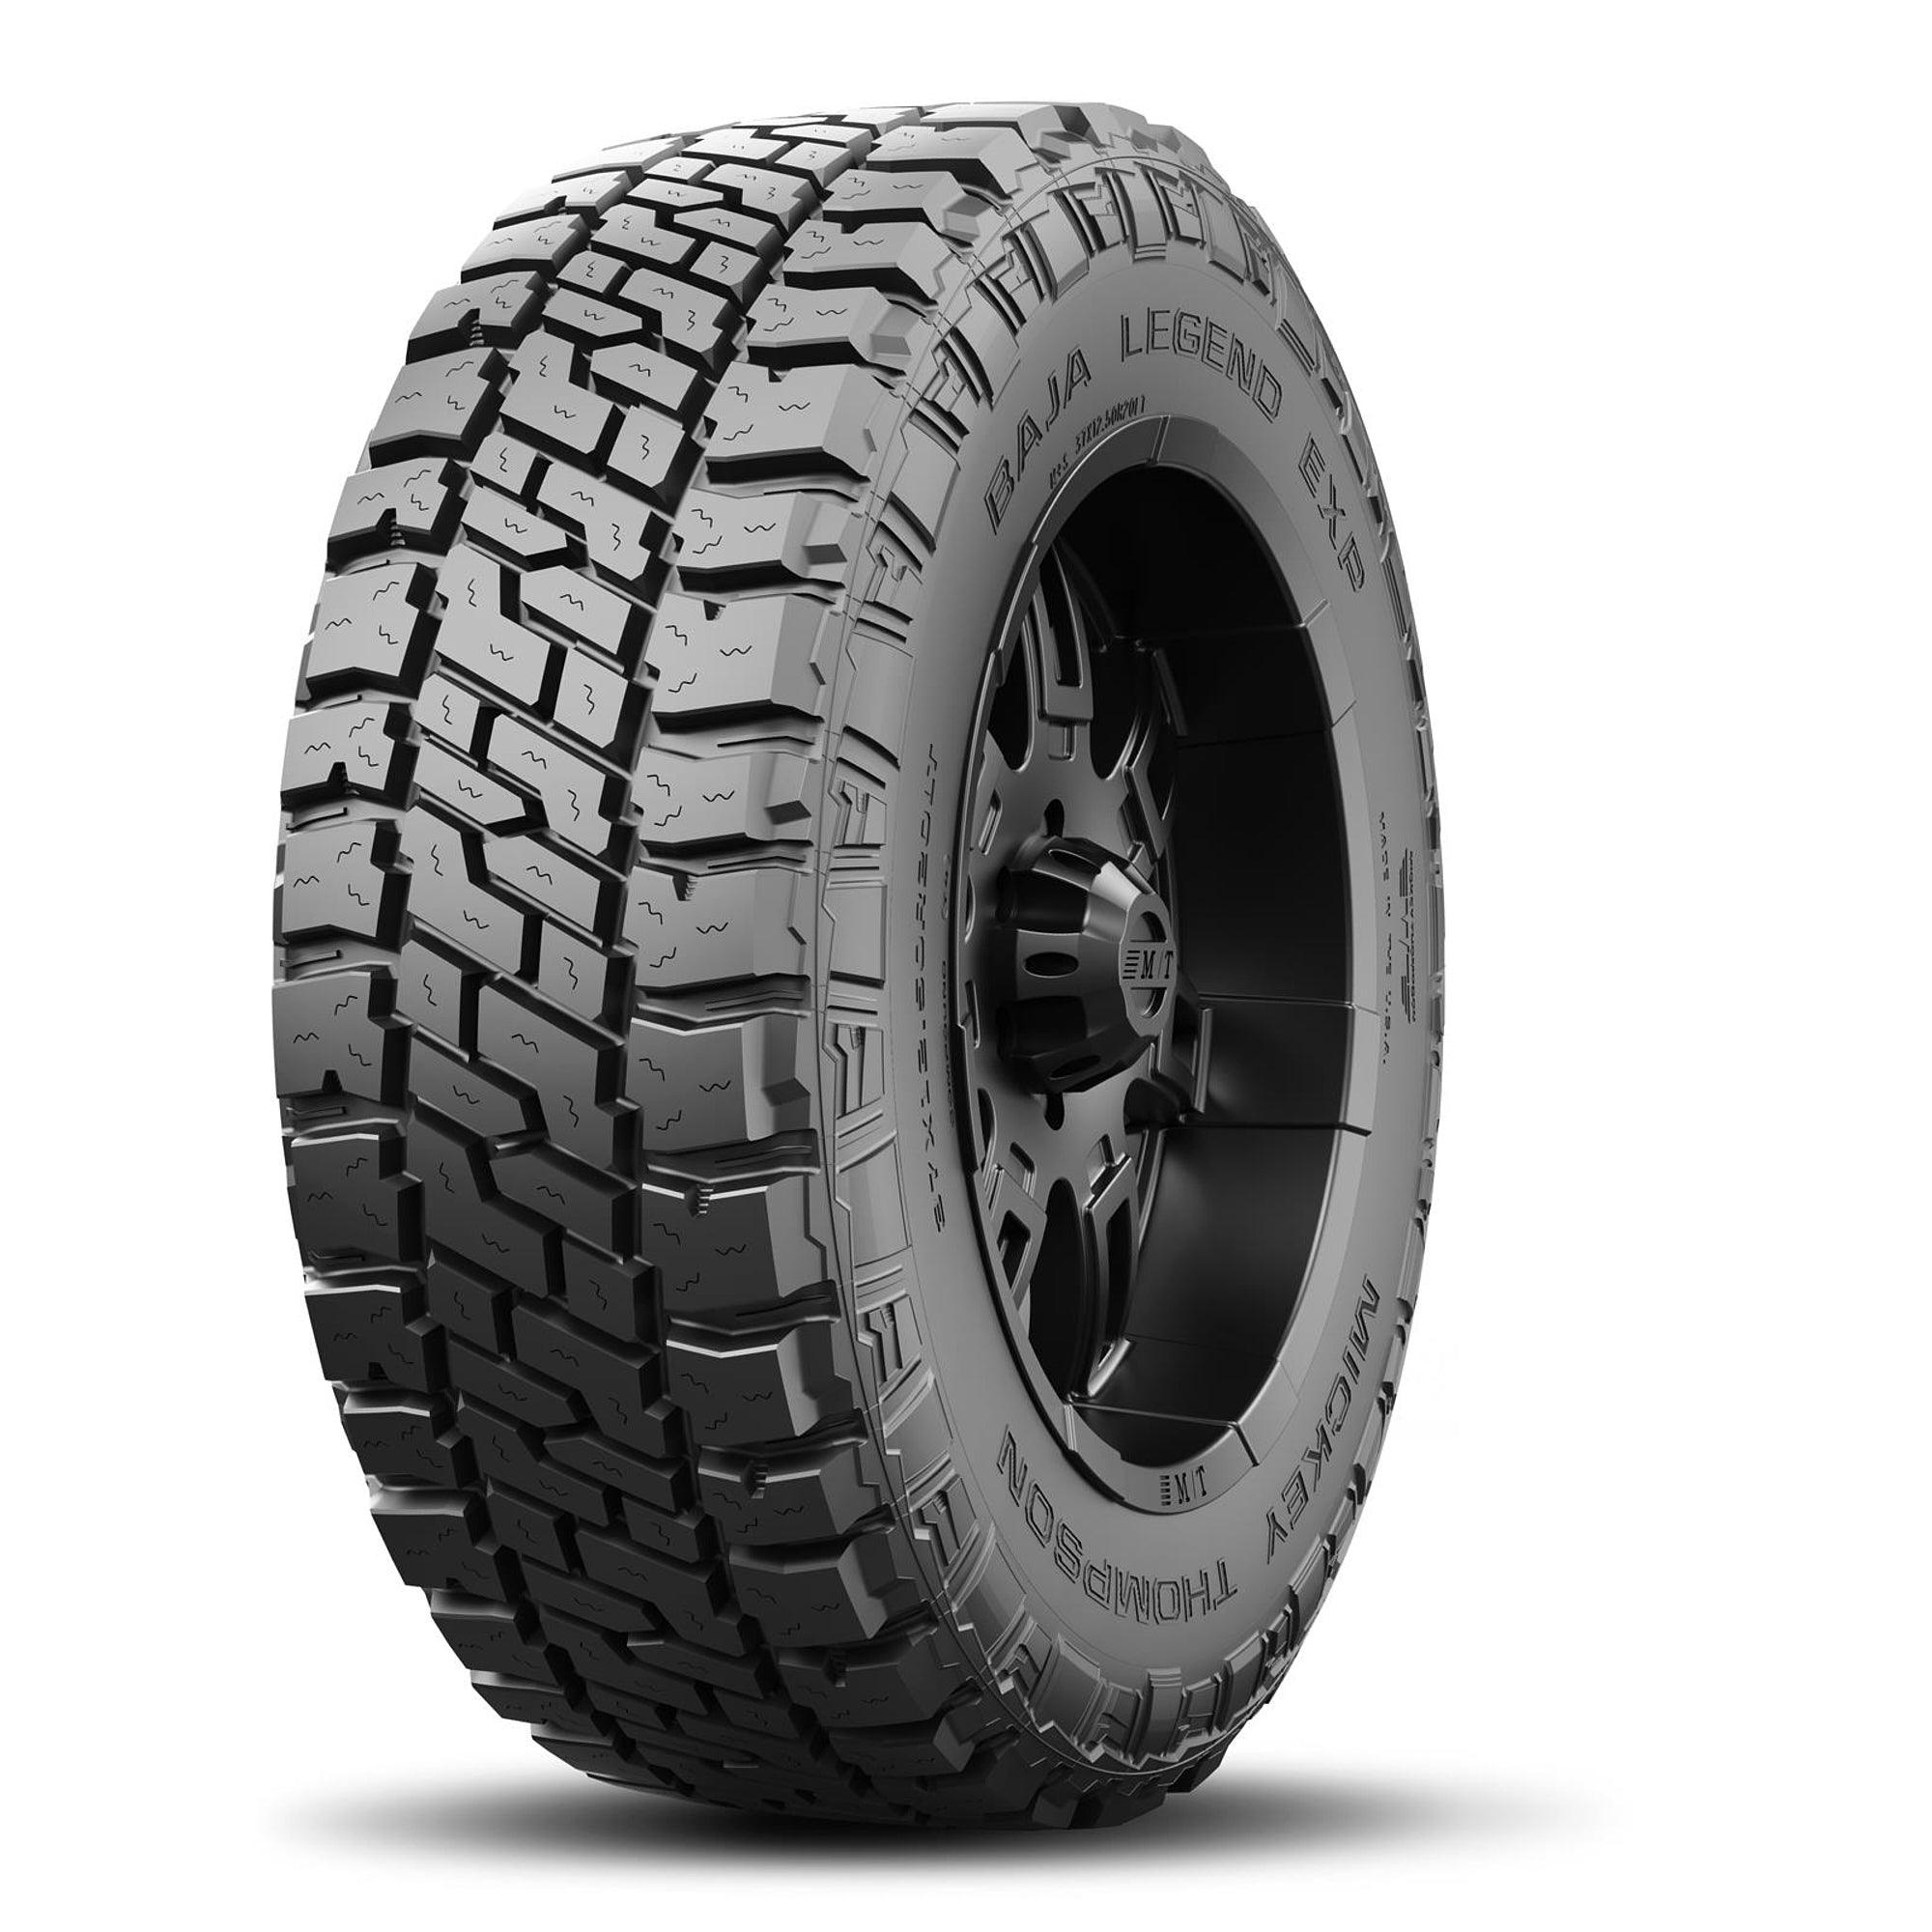 Baja Legend EXP Tire LT295/60R20 126/123Q - Burlile Performance Products